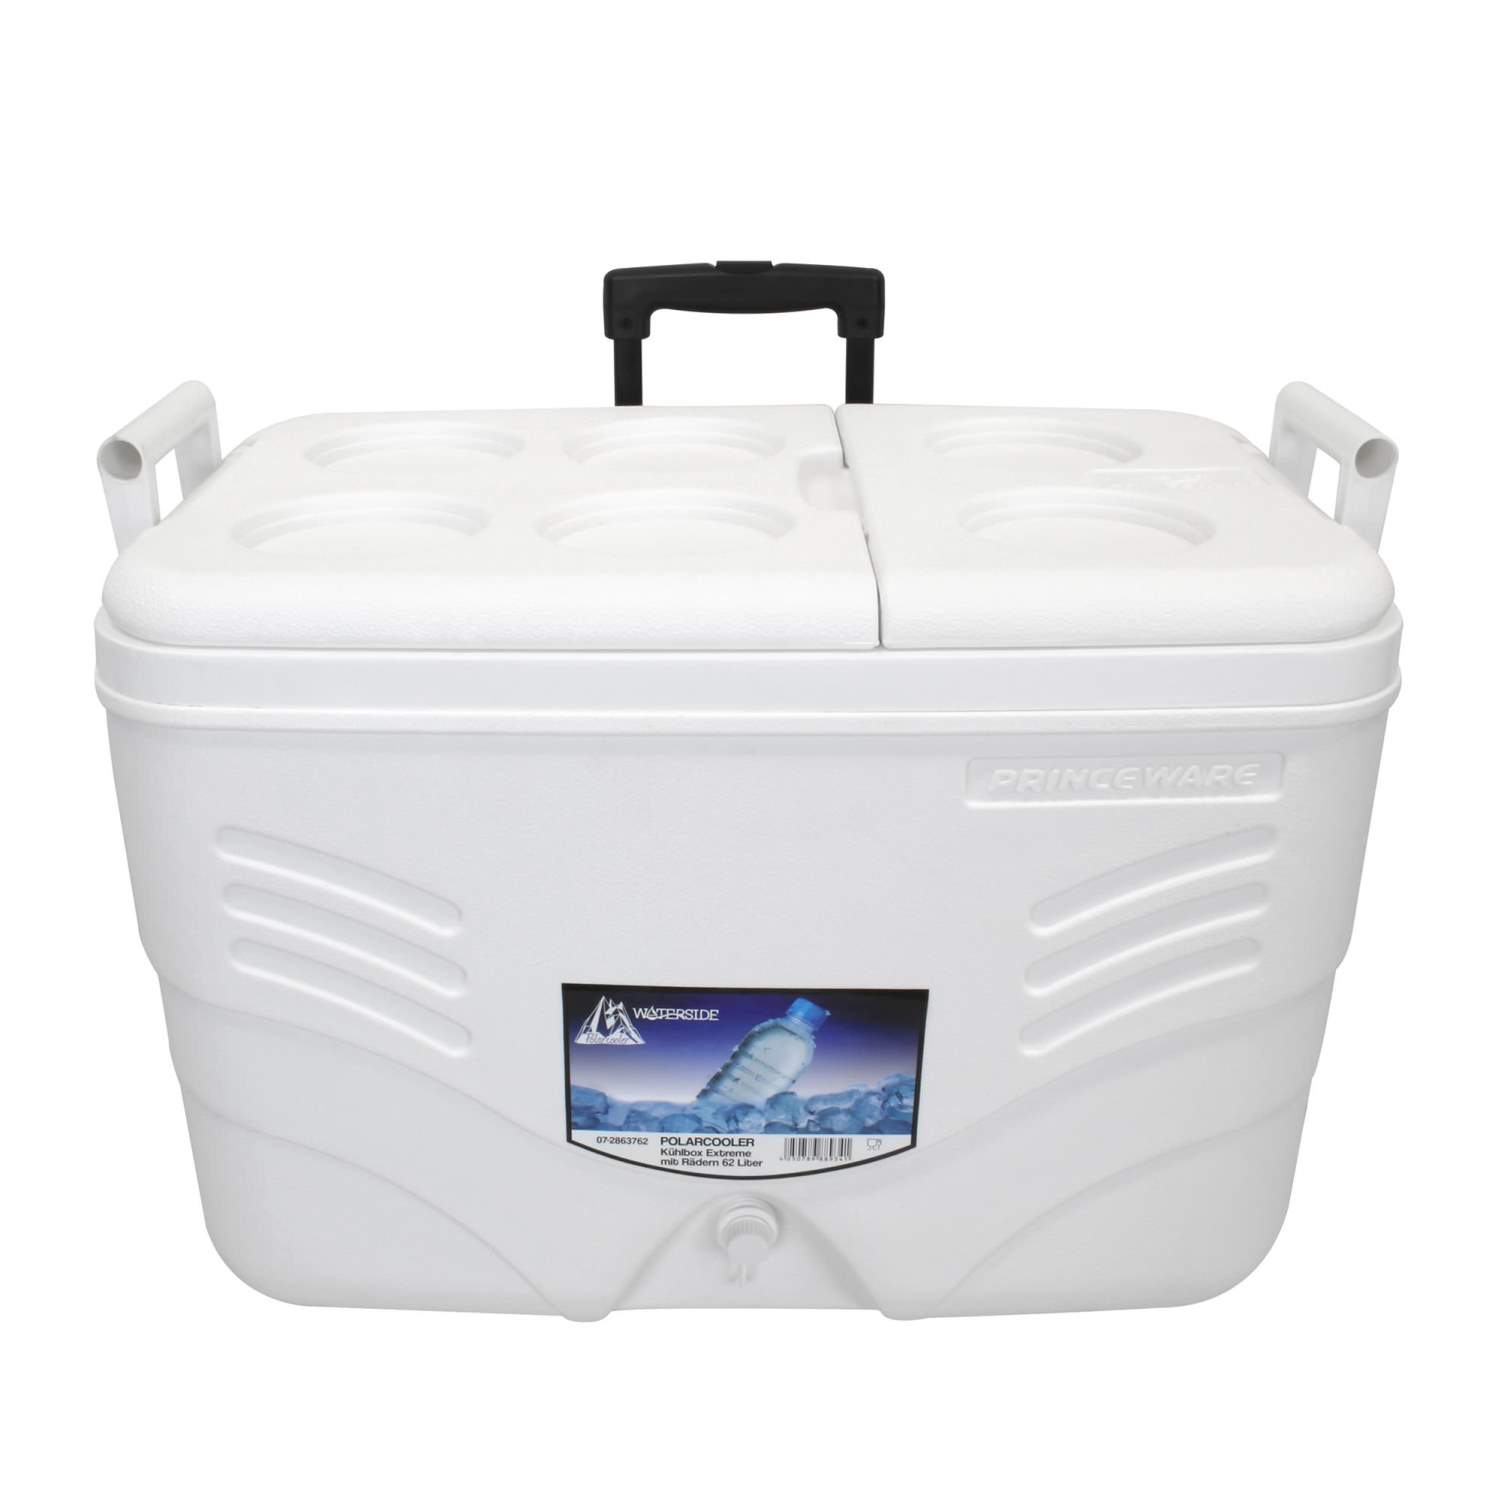 Waterside - Polarcooler - Kühlbox - 62 Liter